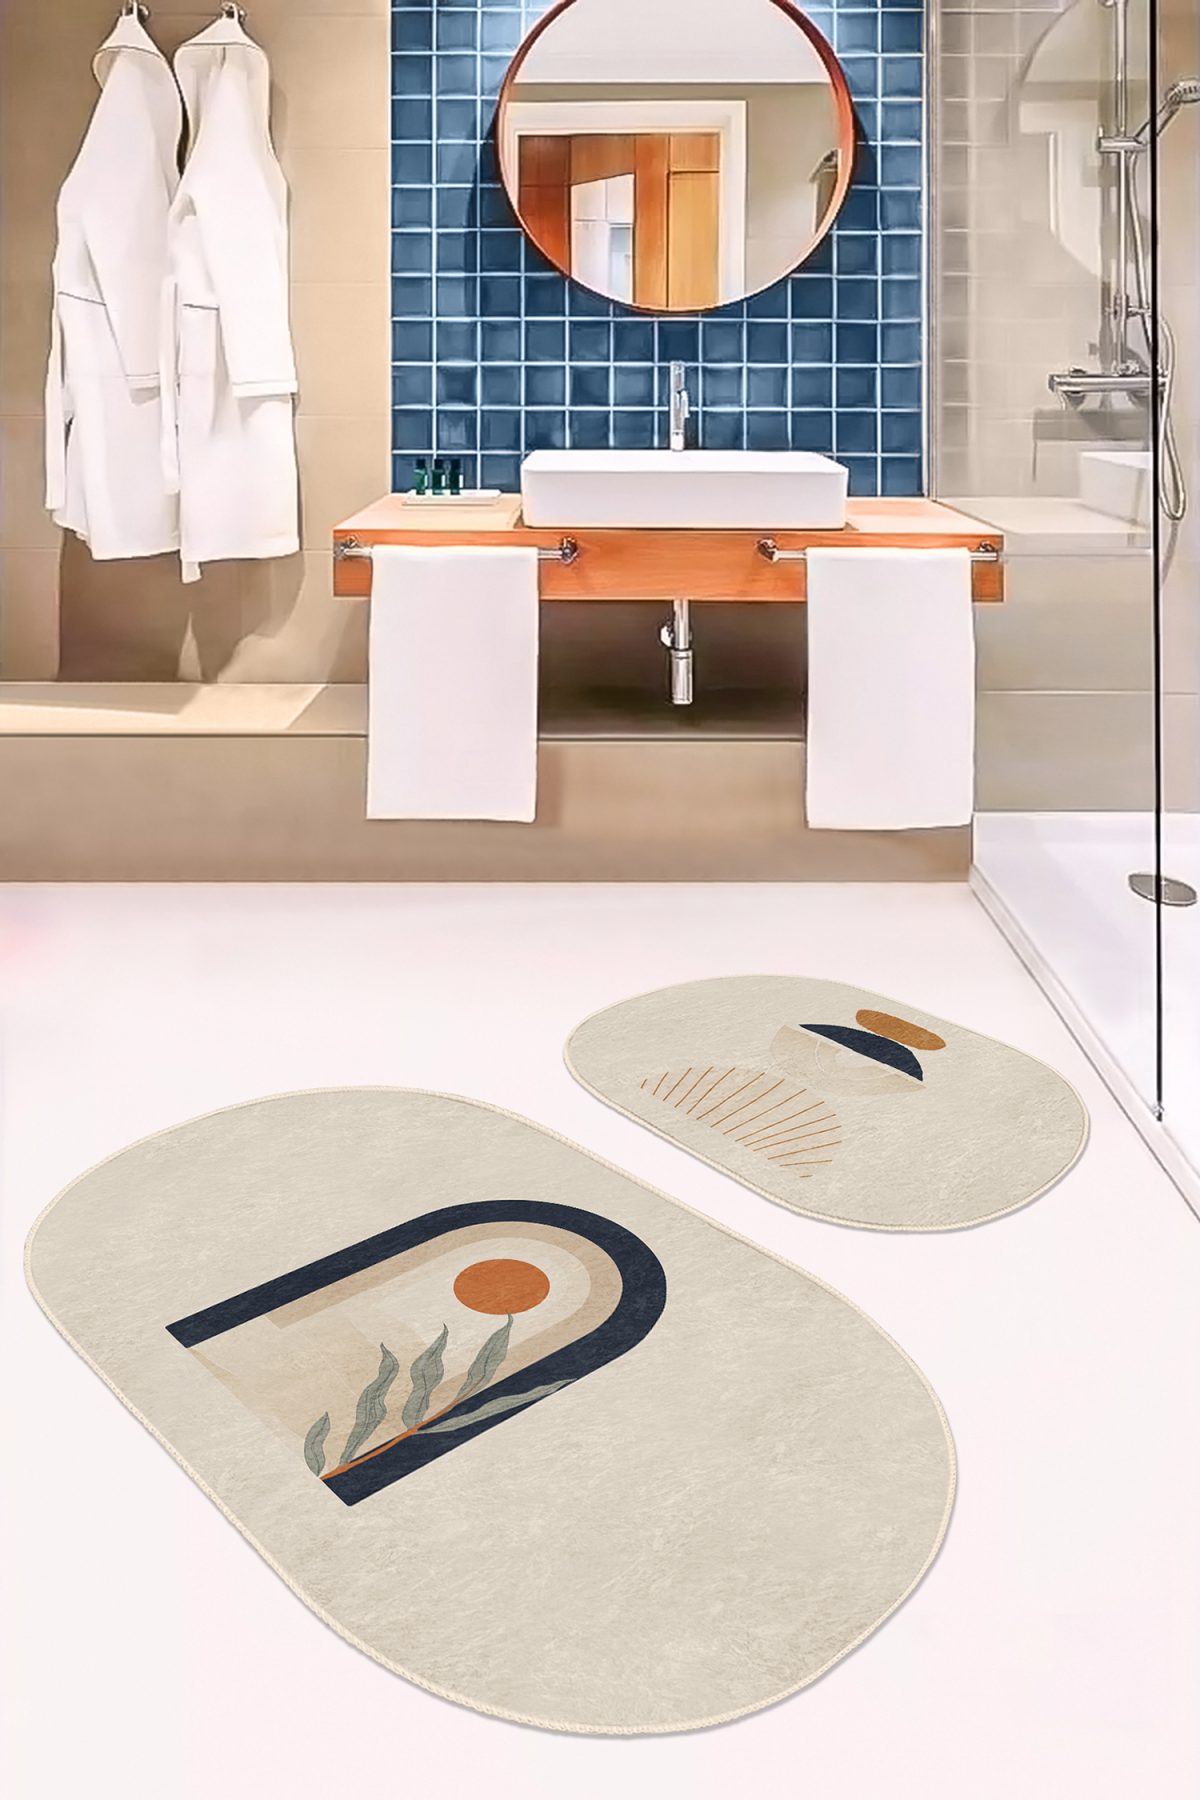 Onedraw Temalı Özel Tasarım Dijital Baskılı 2'li Oval Kaymaz Tabanlı Banyo & Mutfak Paspas Takımı Realhomes